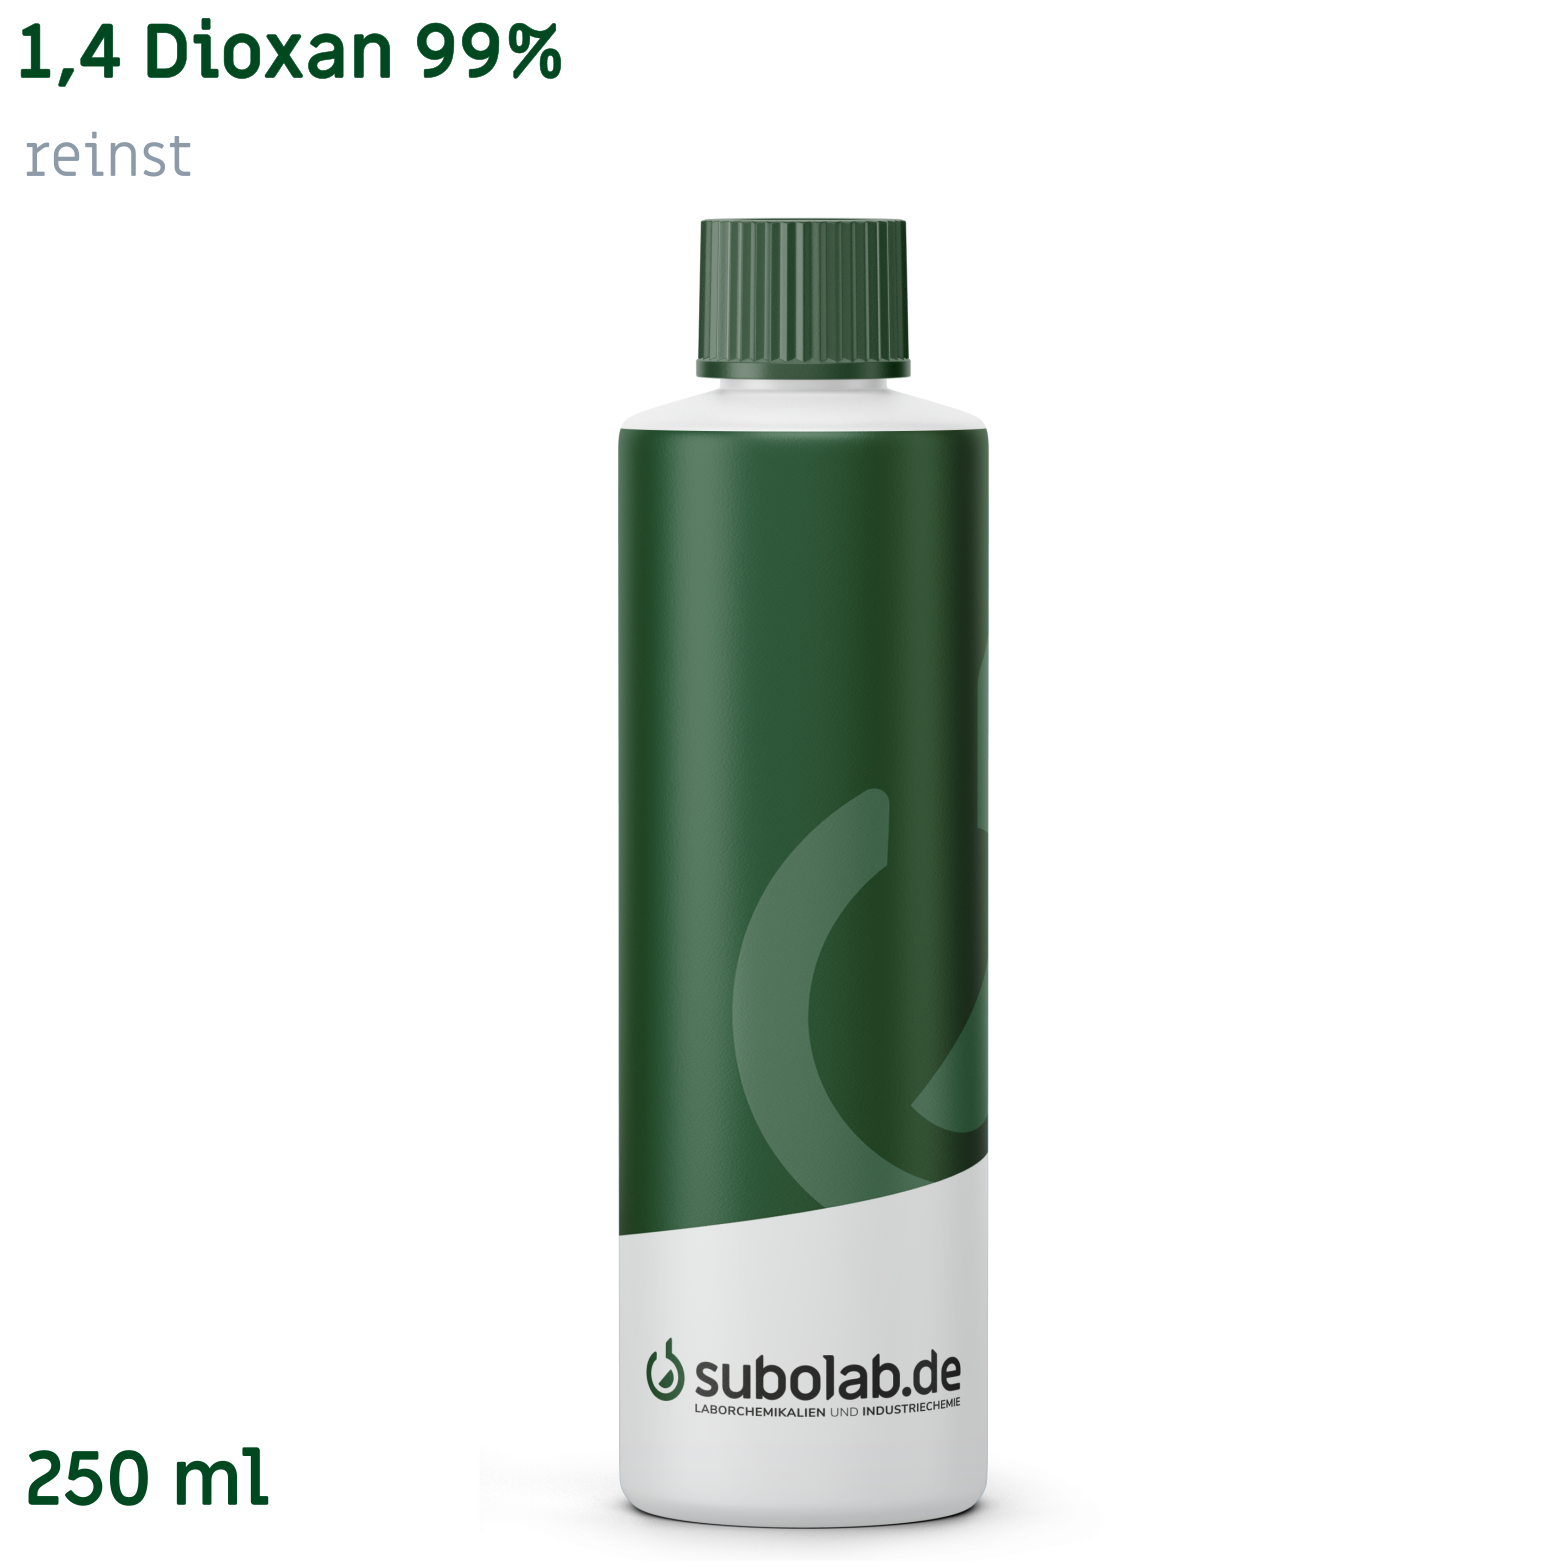 Bild von 1,4 Dioxan 99% reinst (250 ml)